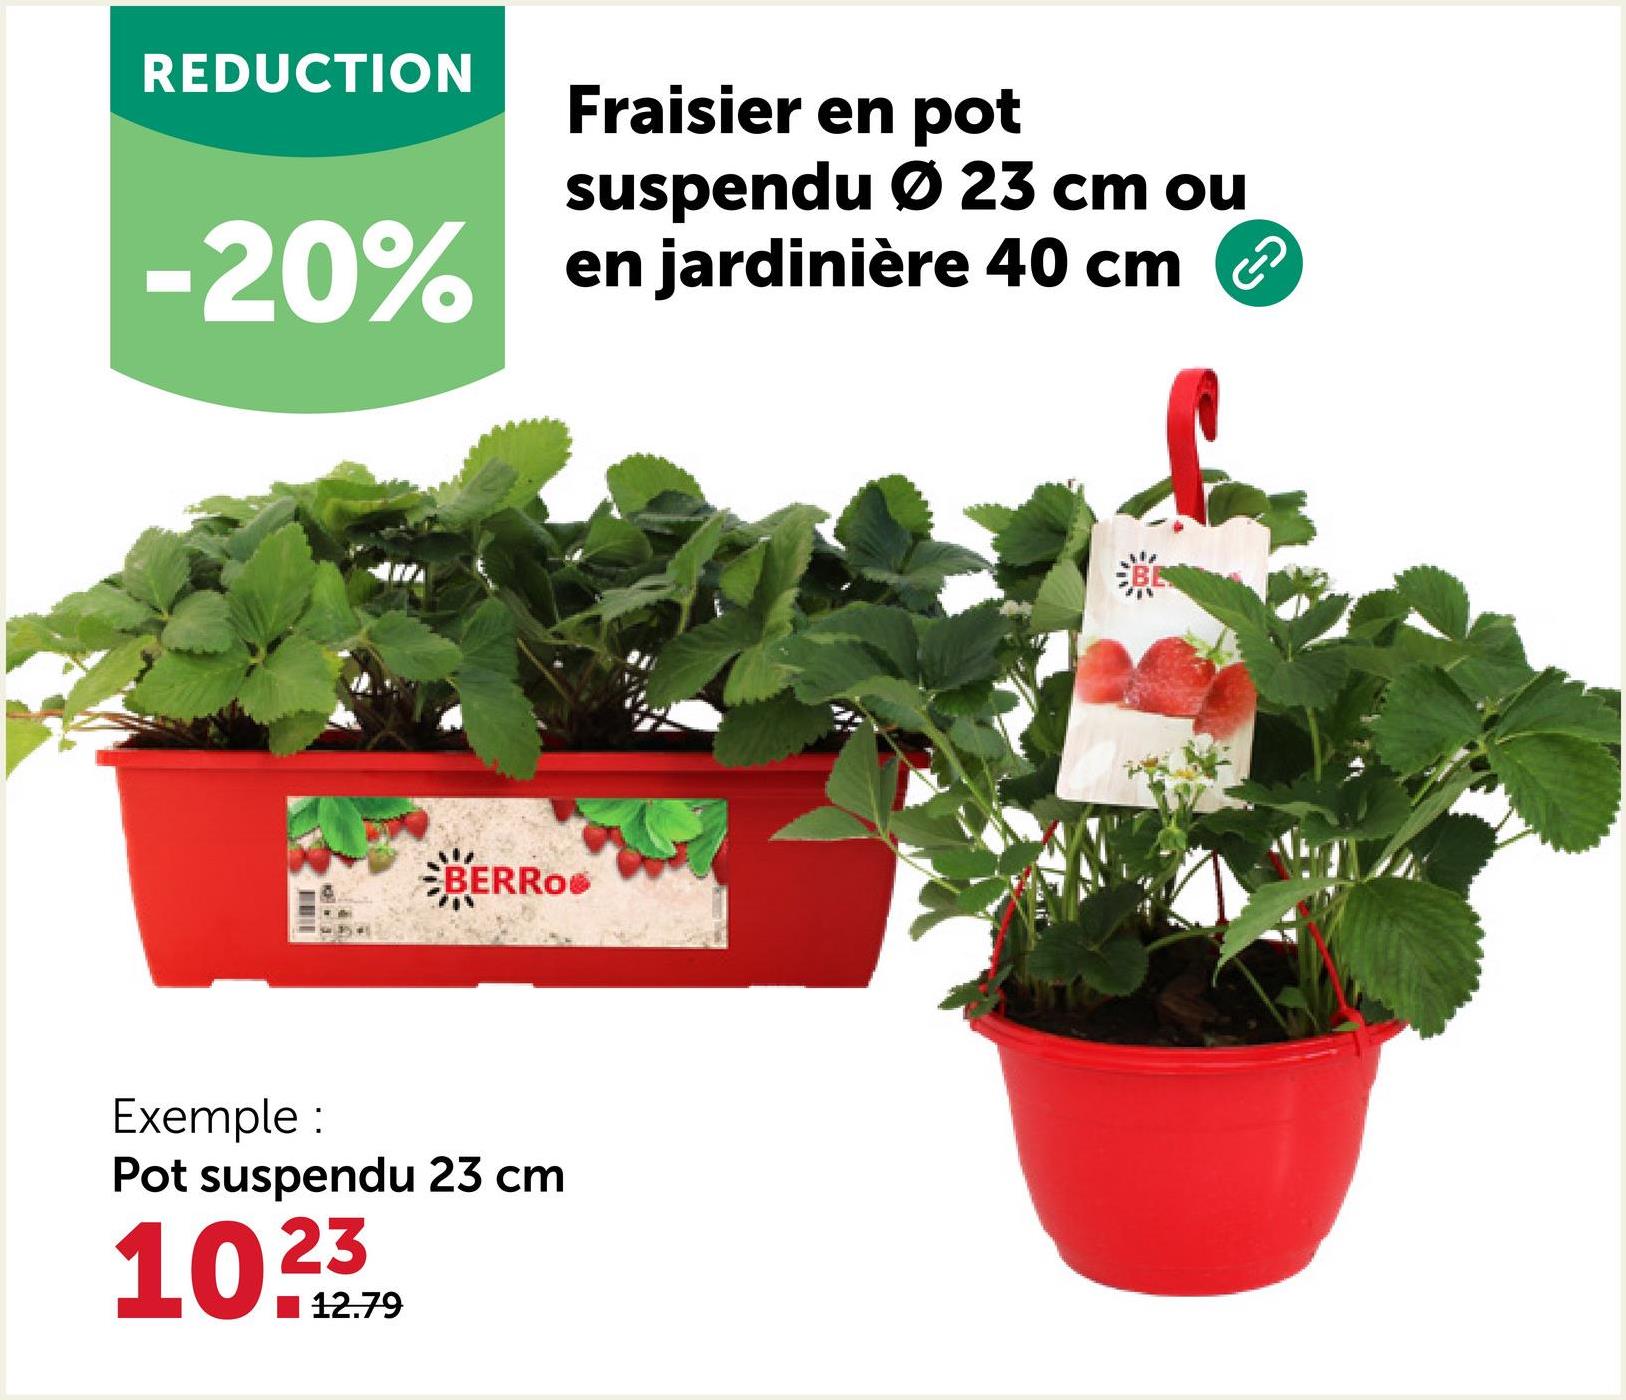 REDUCTION
Fraisier en pot
suspendu Ø 23 cm ou
-20% en jardinière 40 cm
BERRO
Exemple:
Pot suspendu 23 cm
10.23
12.79